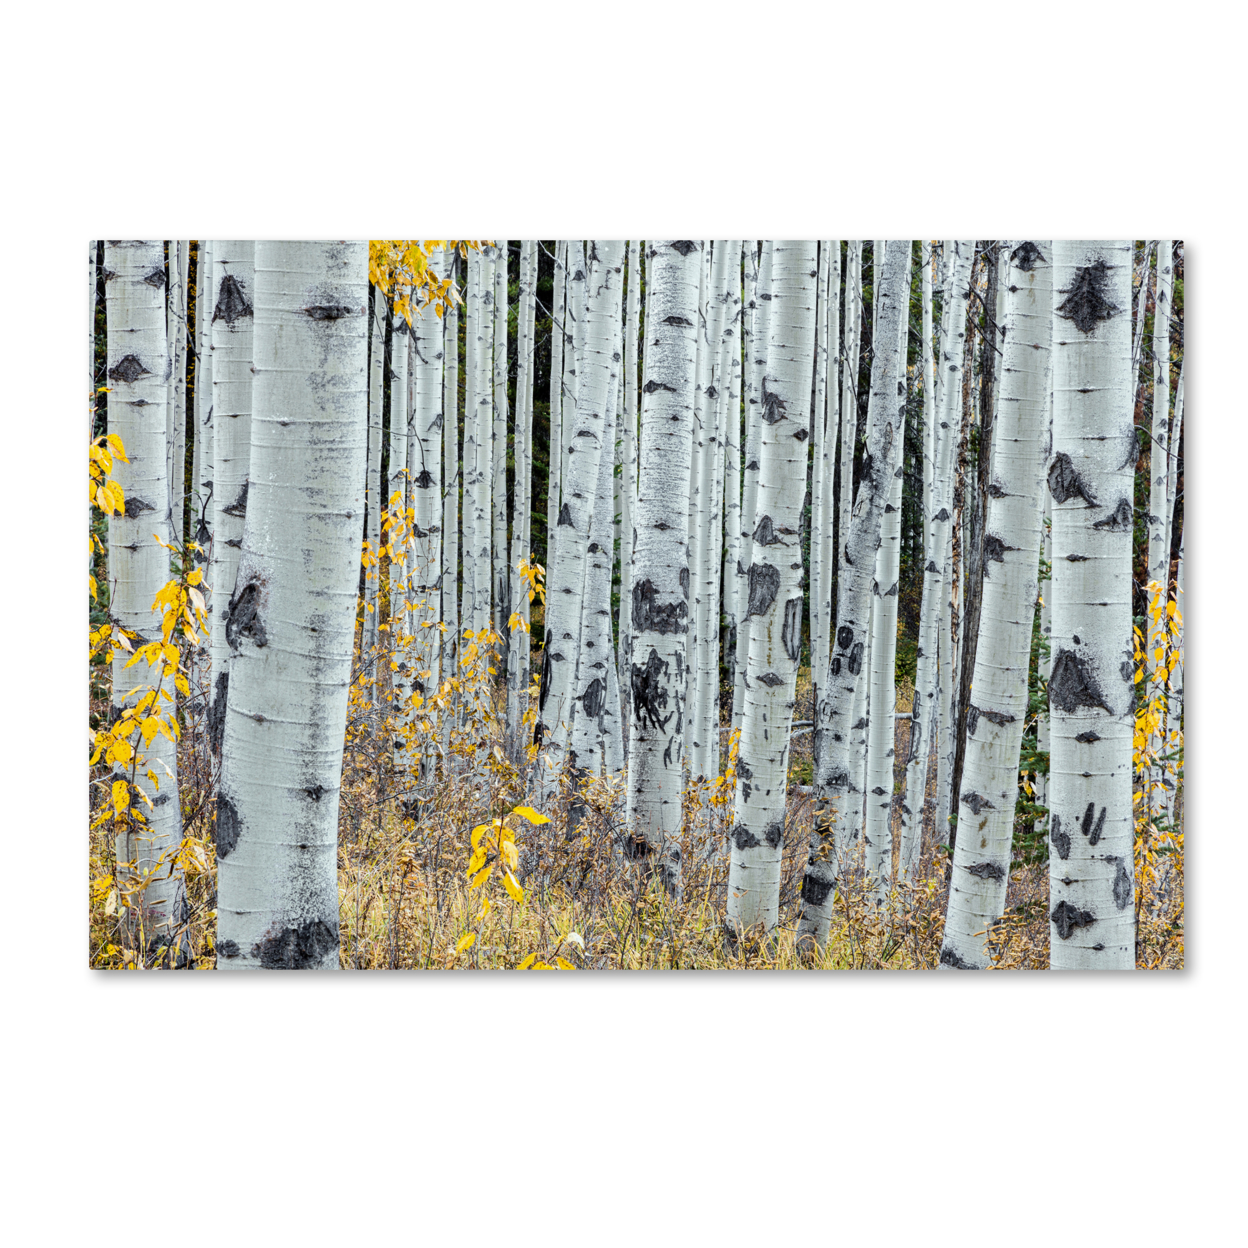 Pierre Leclerc 'Forest Of Aspens' Canvas Art 16 X 24